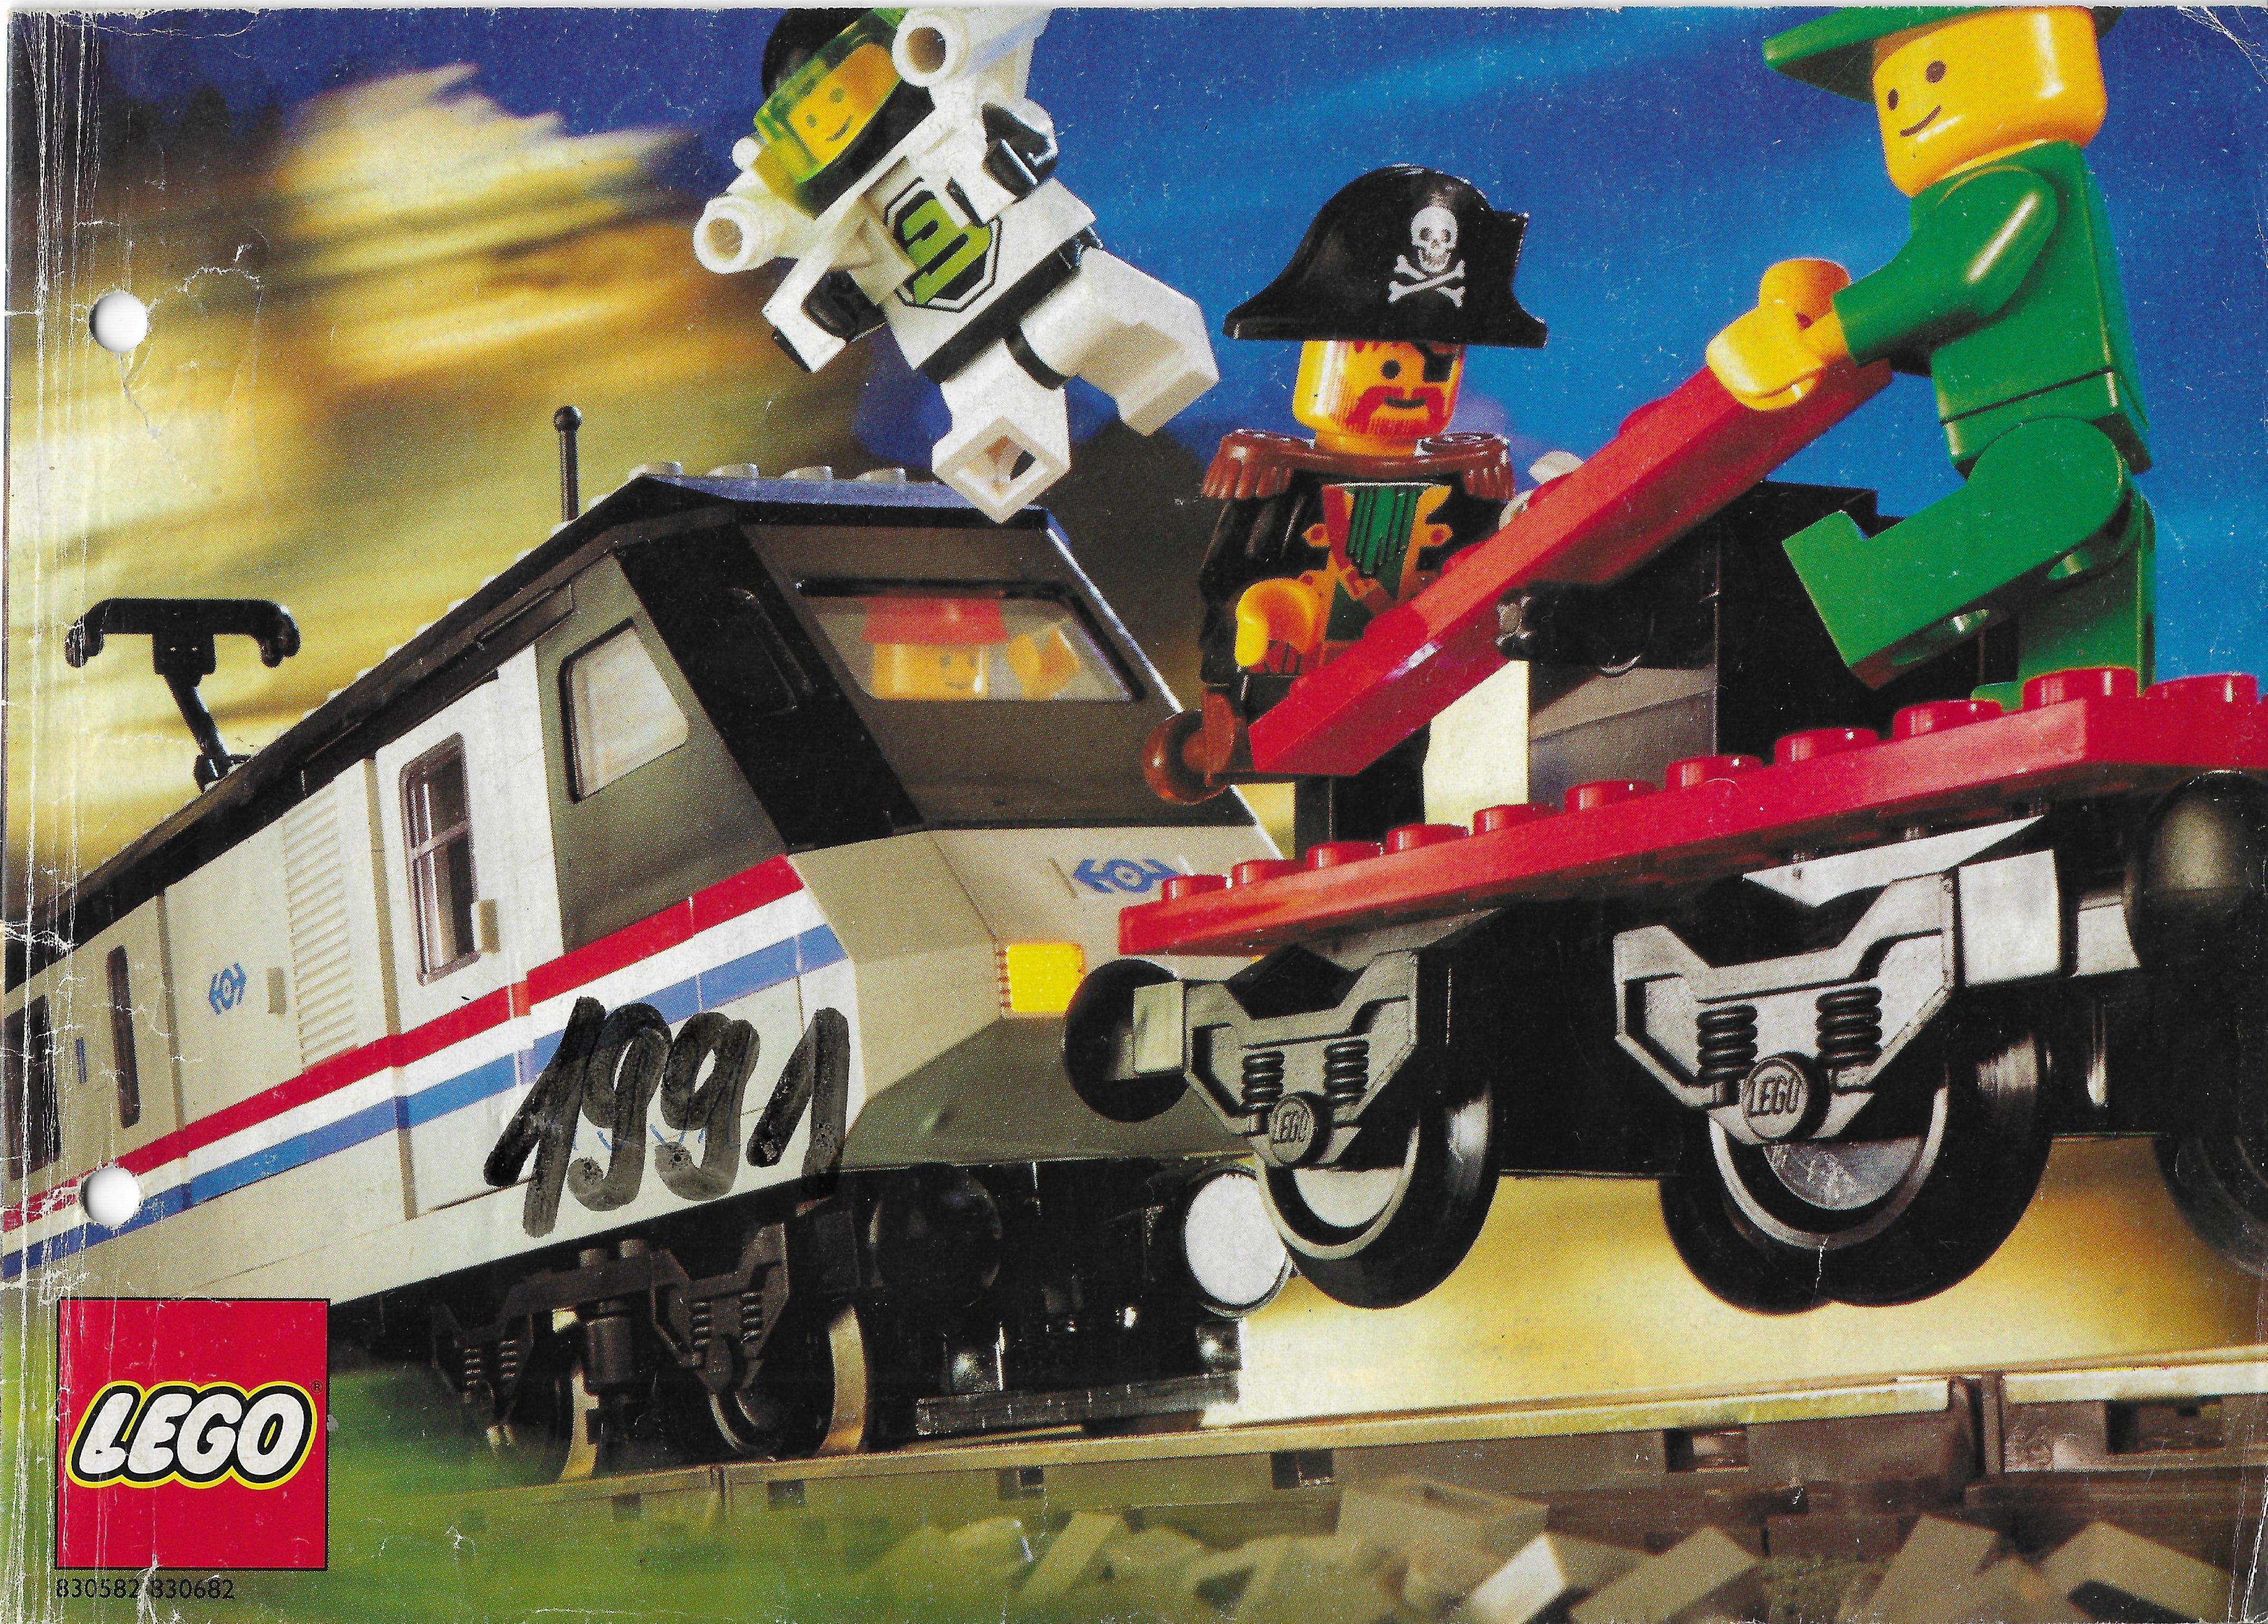 Nyugat-európai, kisméretű Lego katalógus 1991-ből